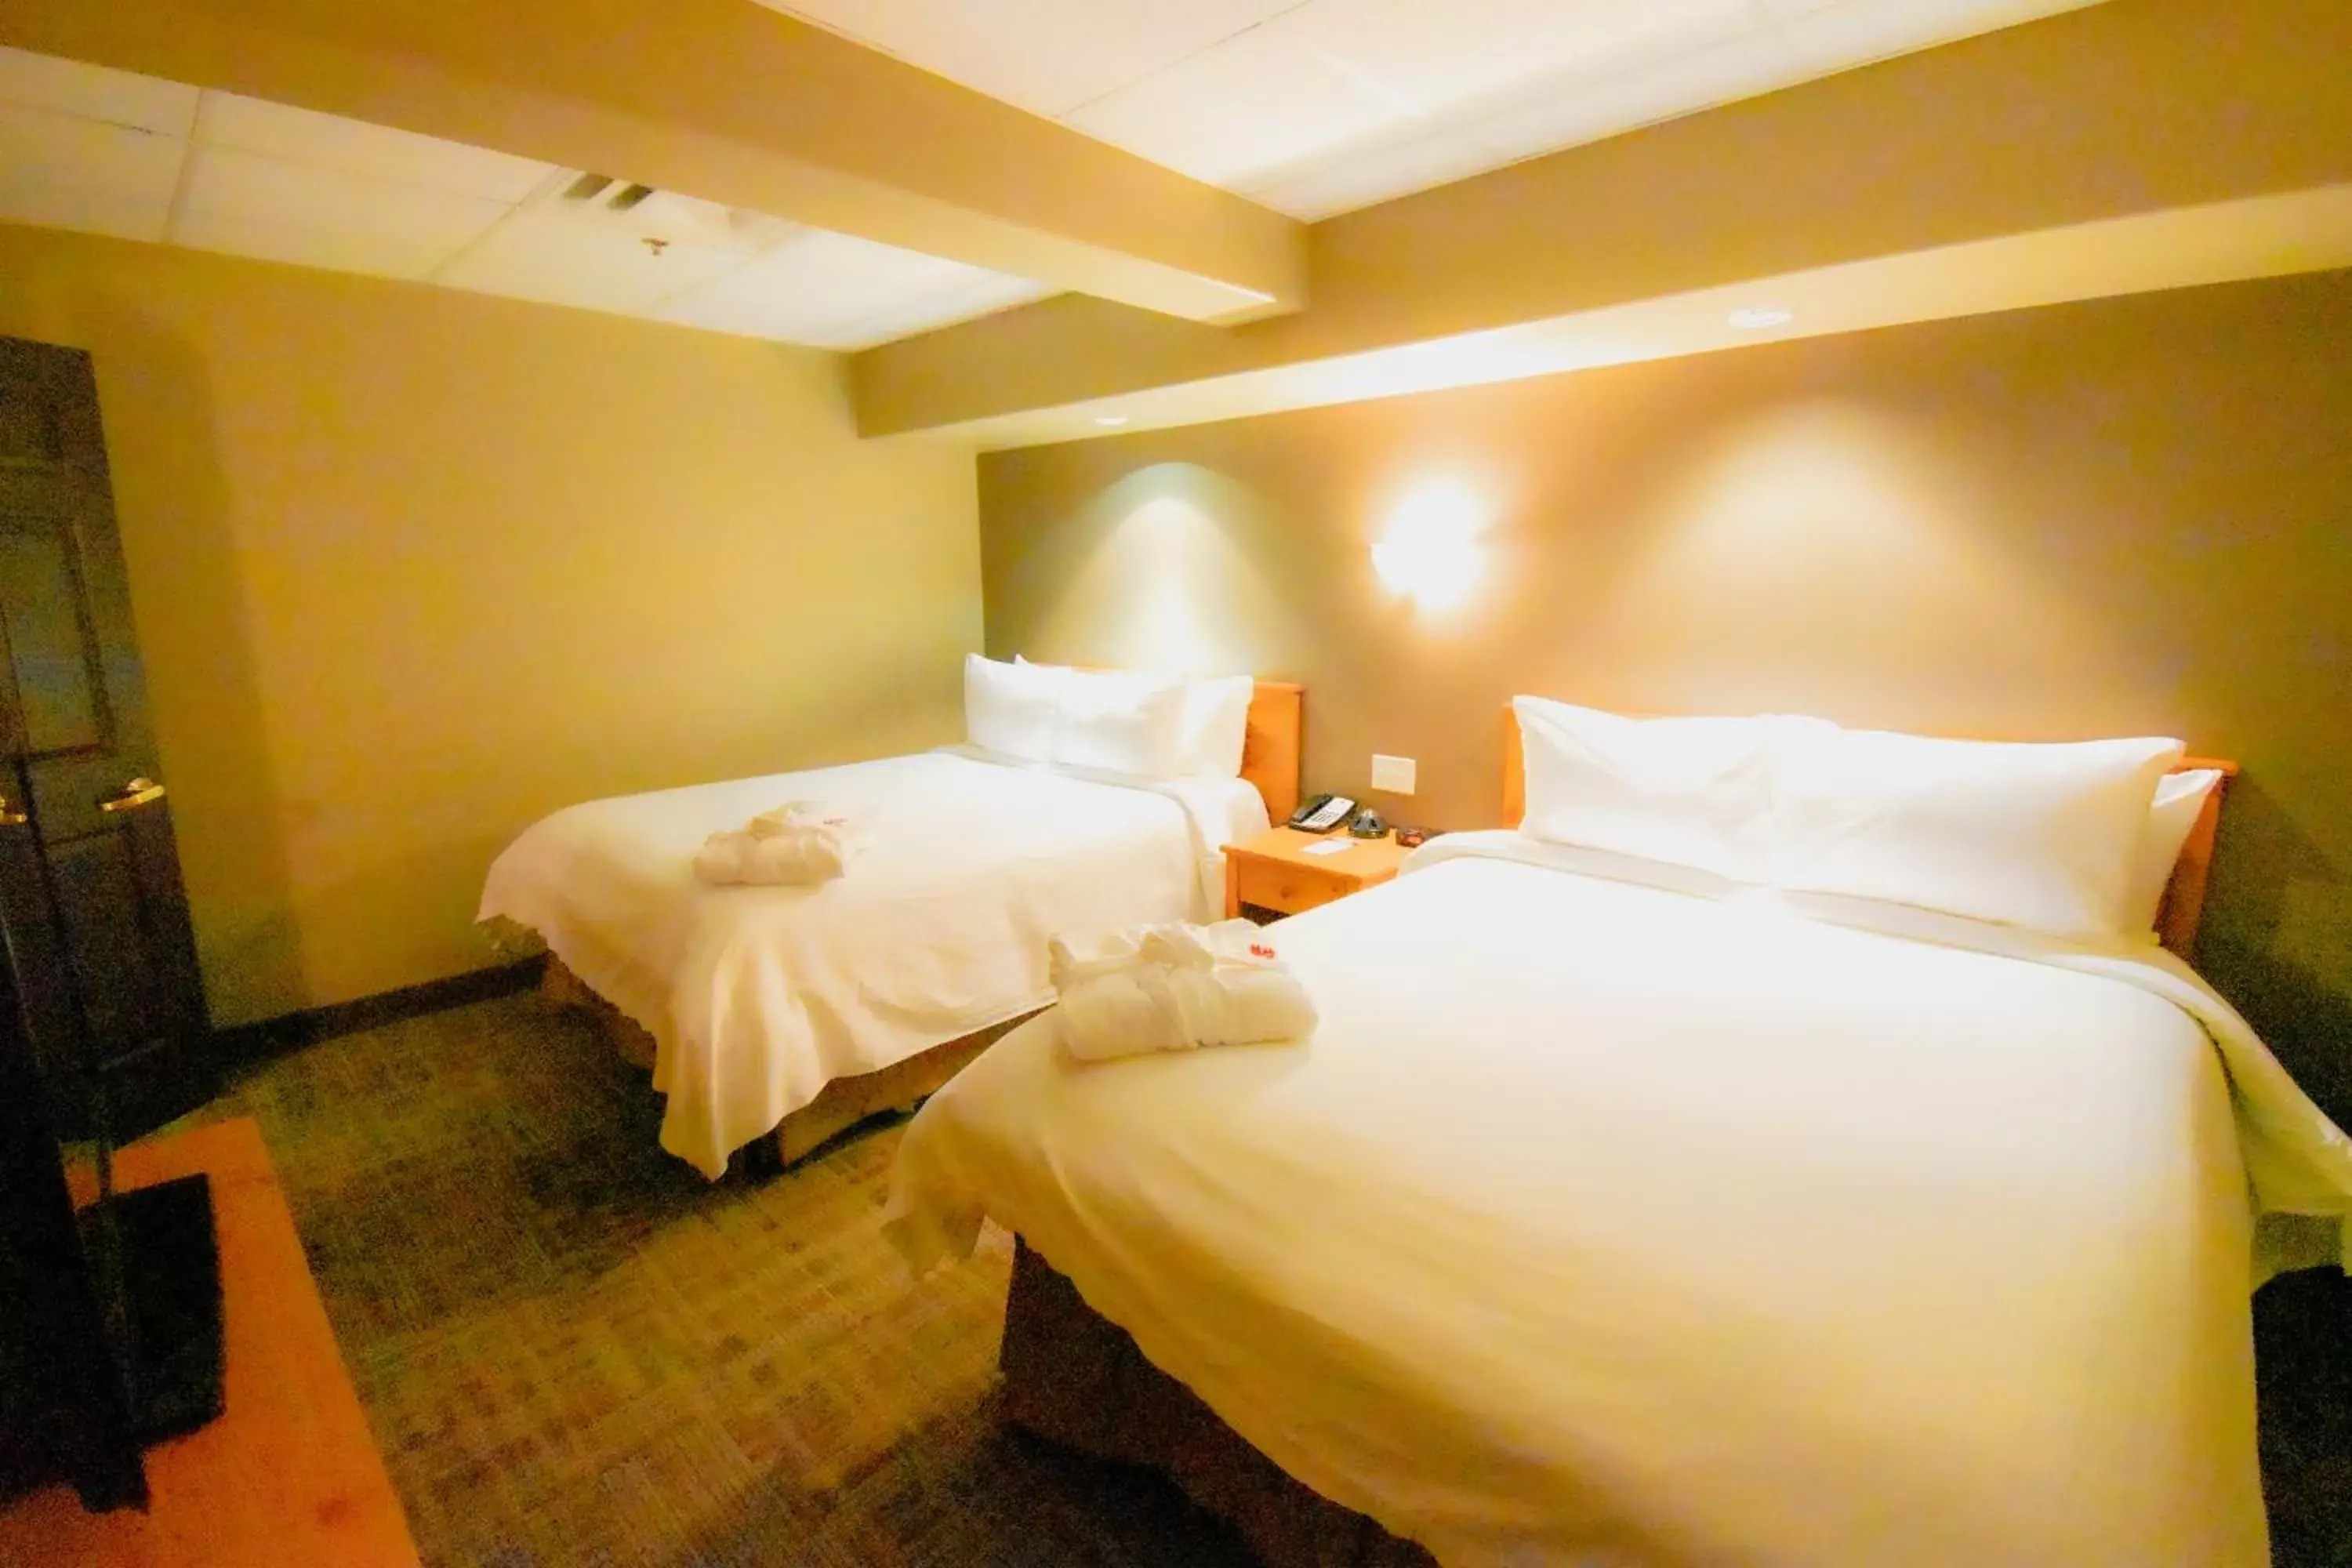 Bedroom, Bed in Canad Inns Destination Centre Portage la Prairie